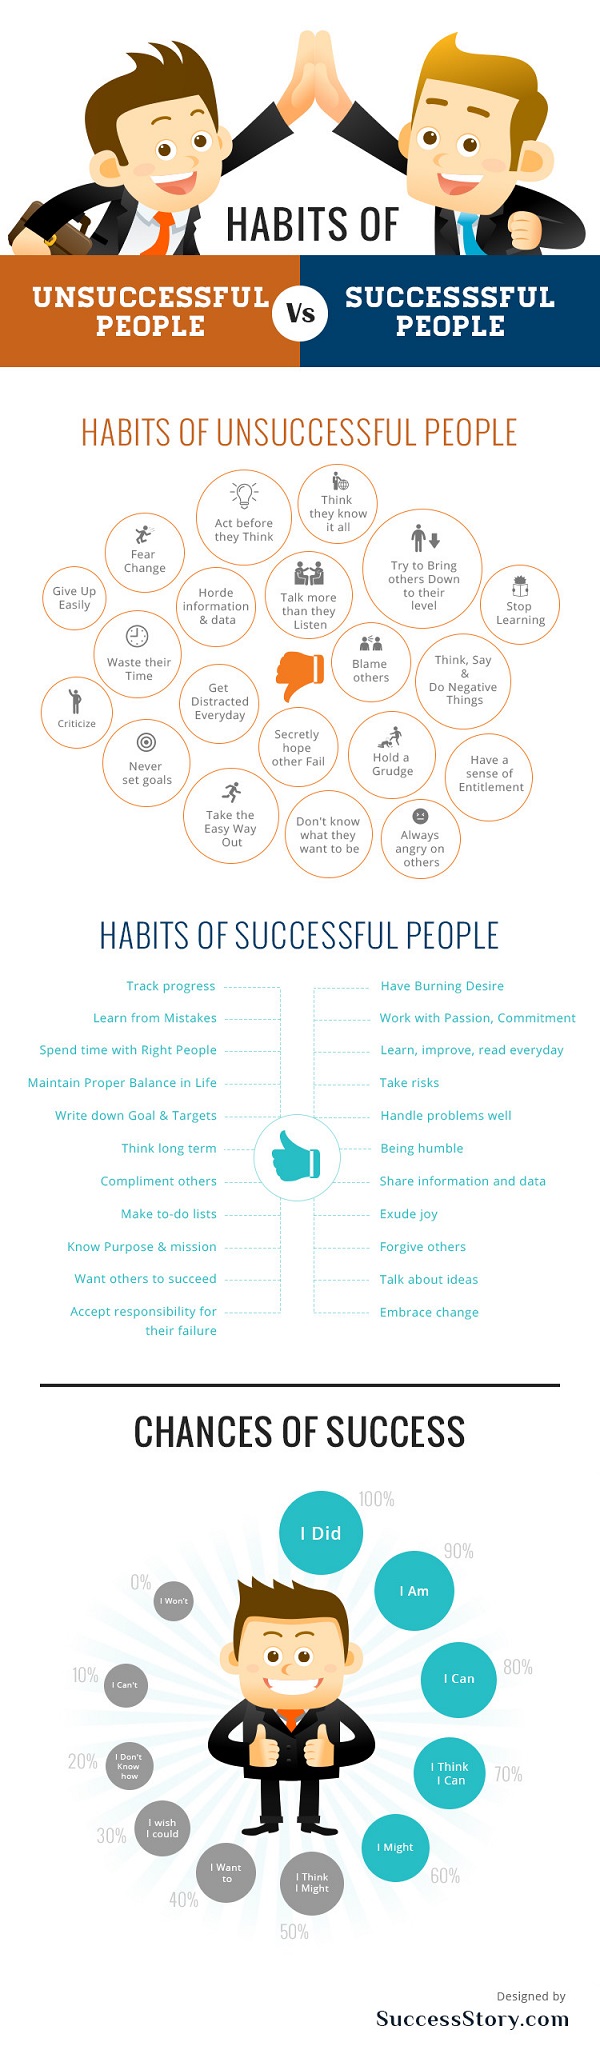 Habits of Unsuccessful People vs Successful People